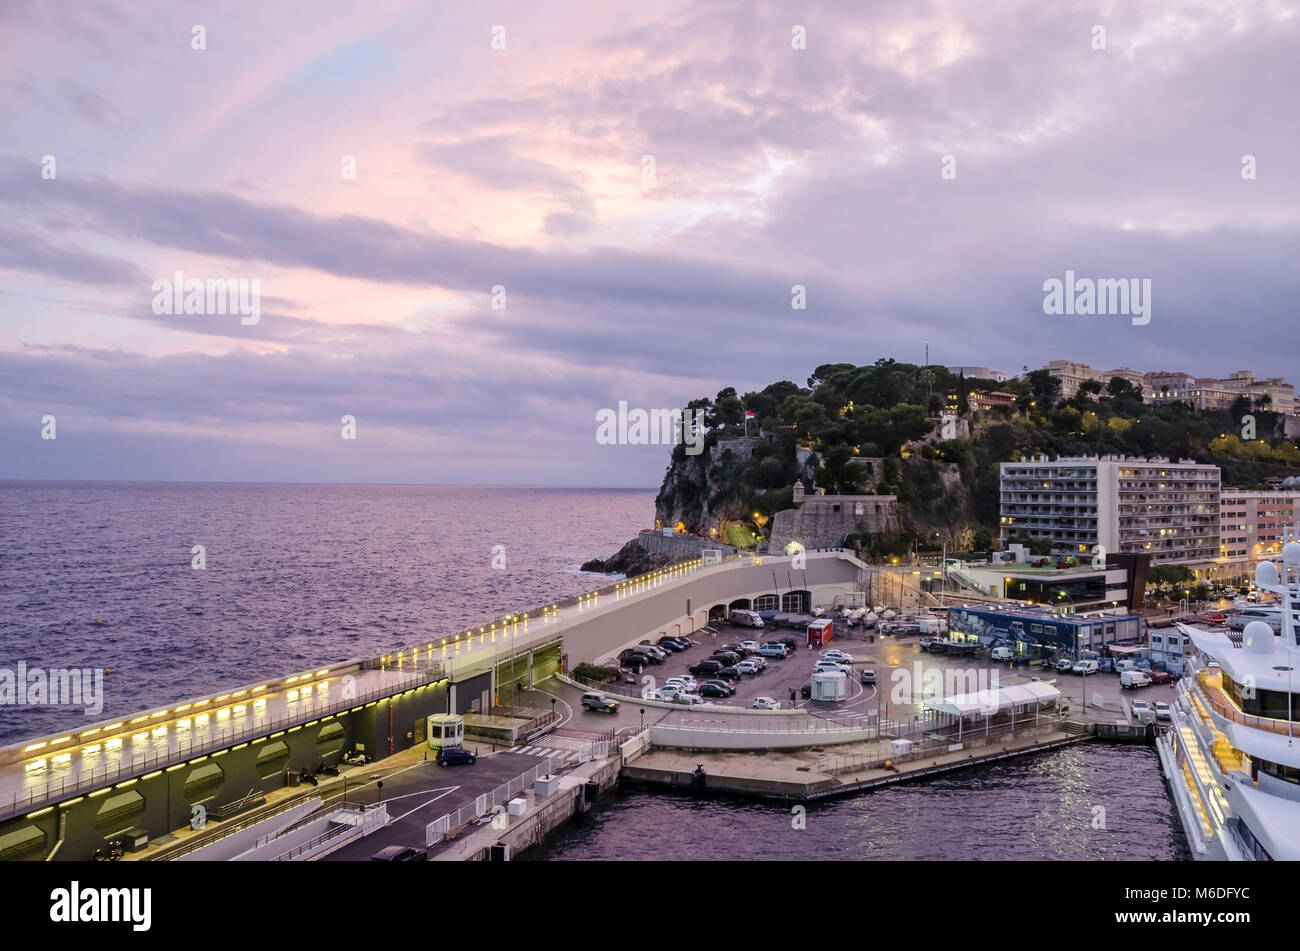 Monaco, Principauté de Monaco - 3 novembre, 2015 : Le point de vue de Monaco-Ville, la vieille ville sur un promontoire rocheux s'étendant dans la Méditerranée Banque D'Images